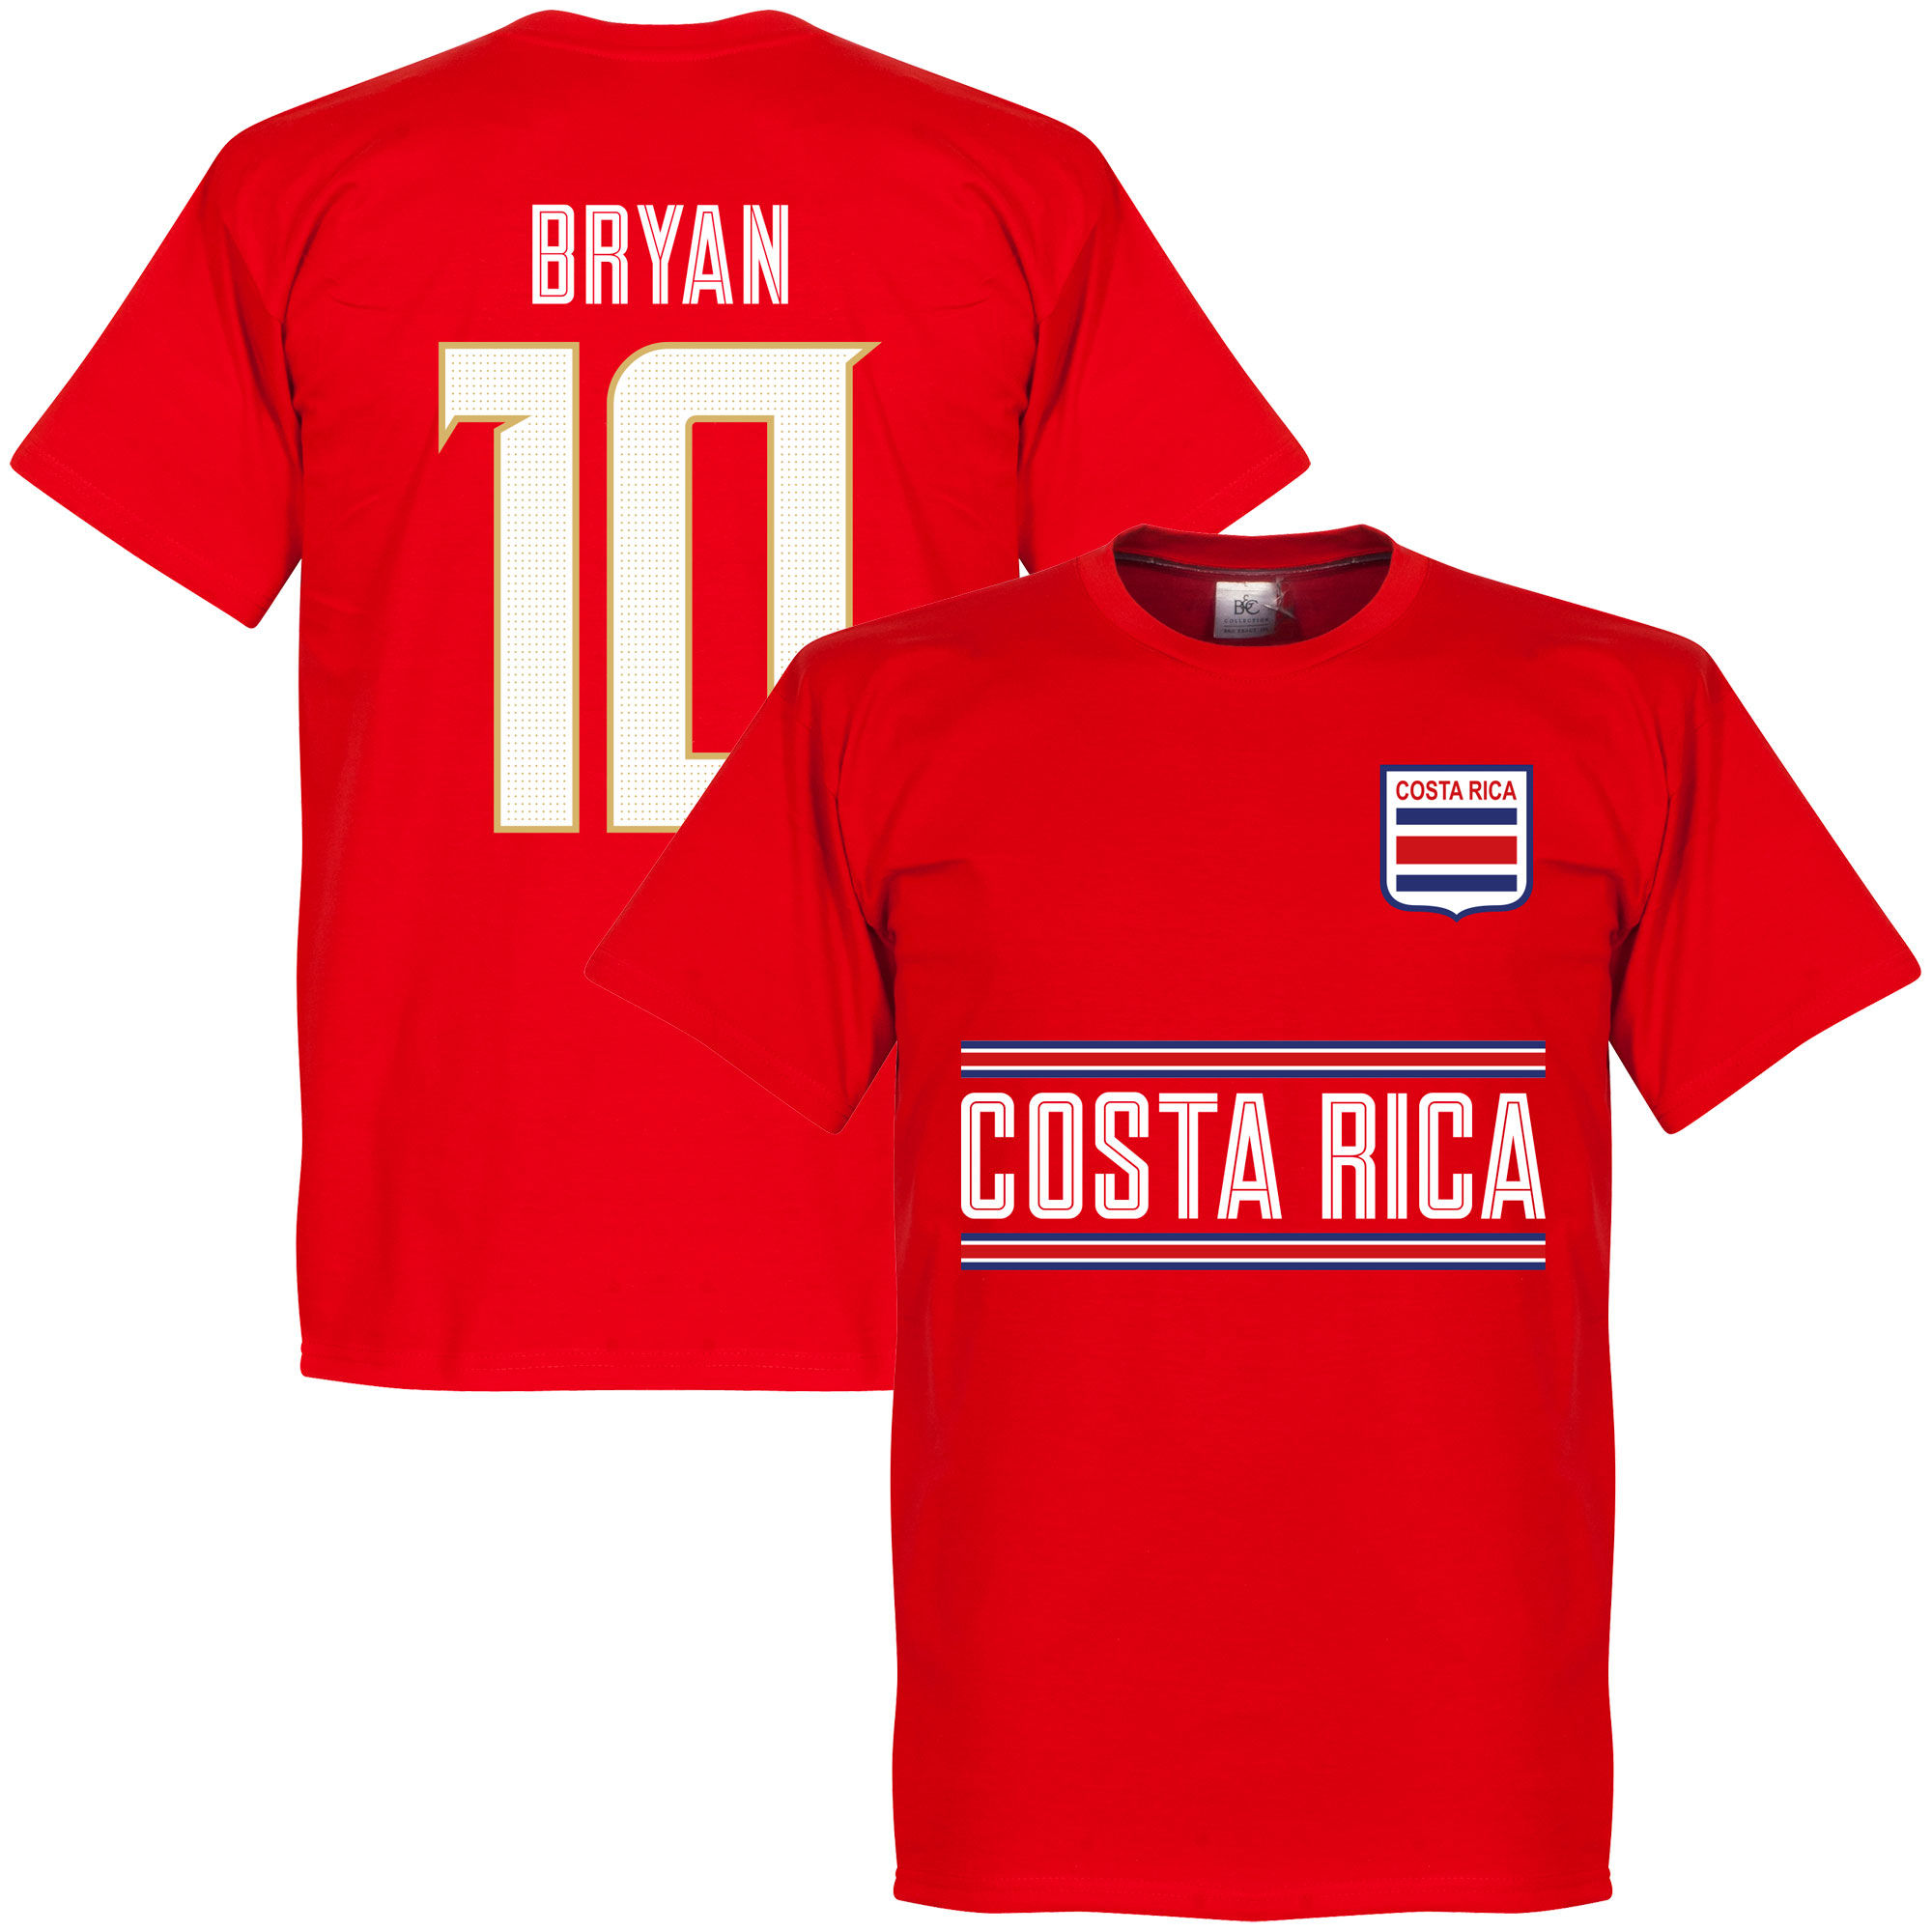 Kostarika - Tričko - červené, Bryan Ruiz, číslo 10